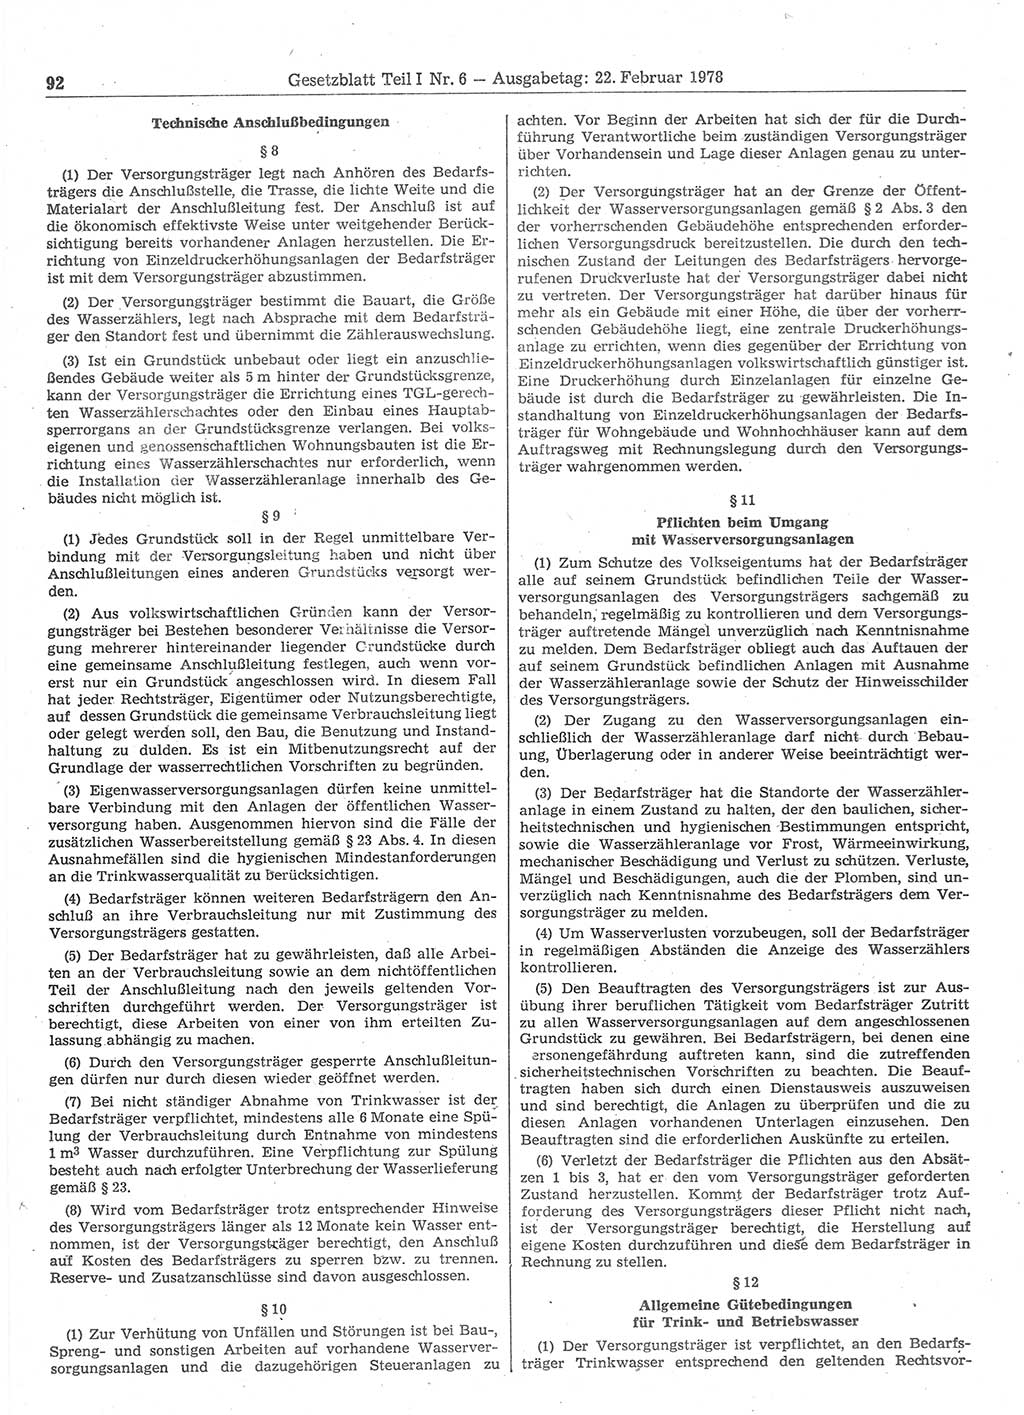 Gesetzblatt (GBl.) der Deutschen Demokratischen Republik (DDR) Teil Ⅰ 1978, Seite 92 (GBl. DDR Ⅰ 1978, S. 92)